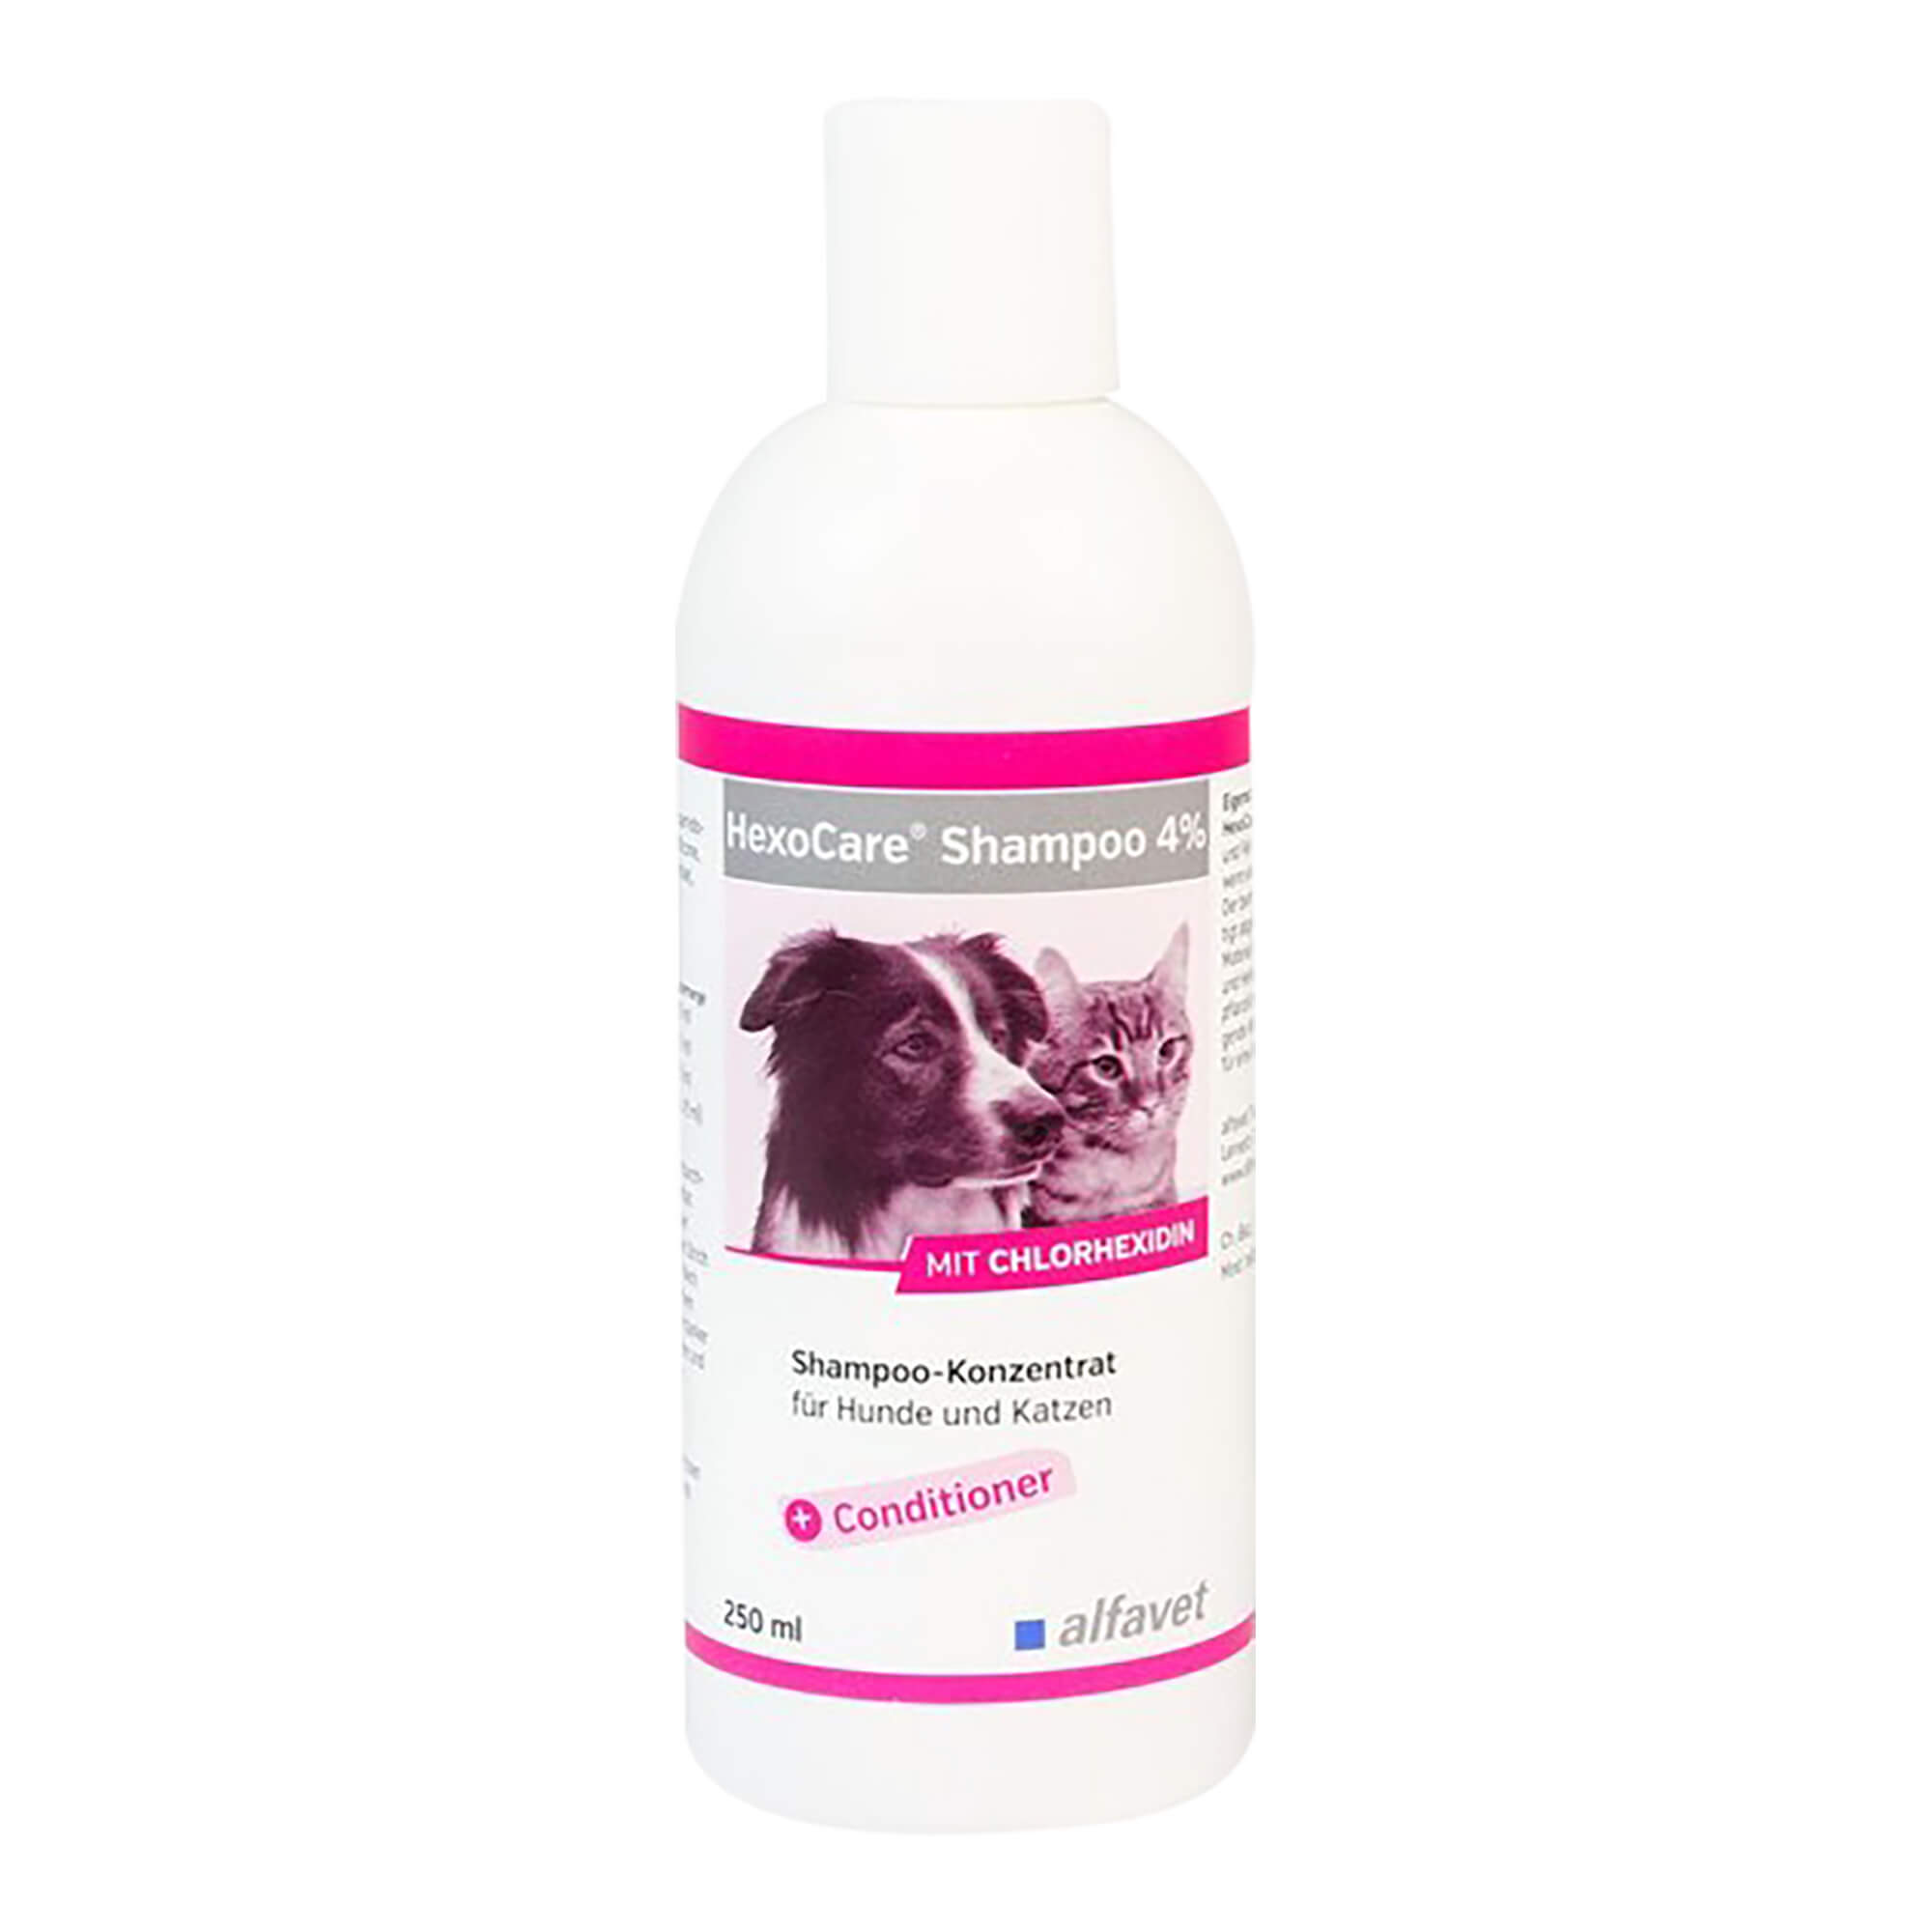 Shampoo für Hunde und Katzen. Mit Chlorhexidin.